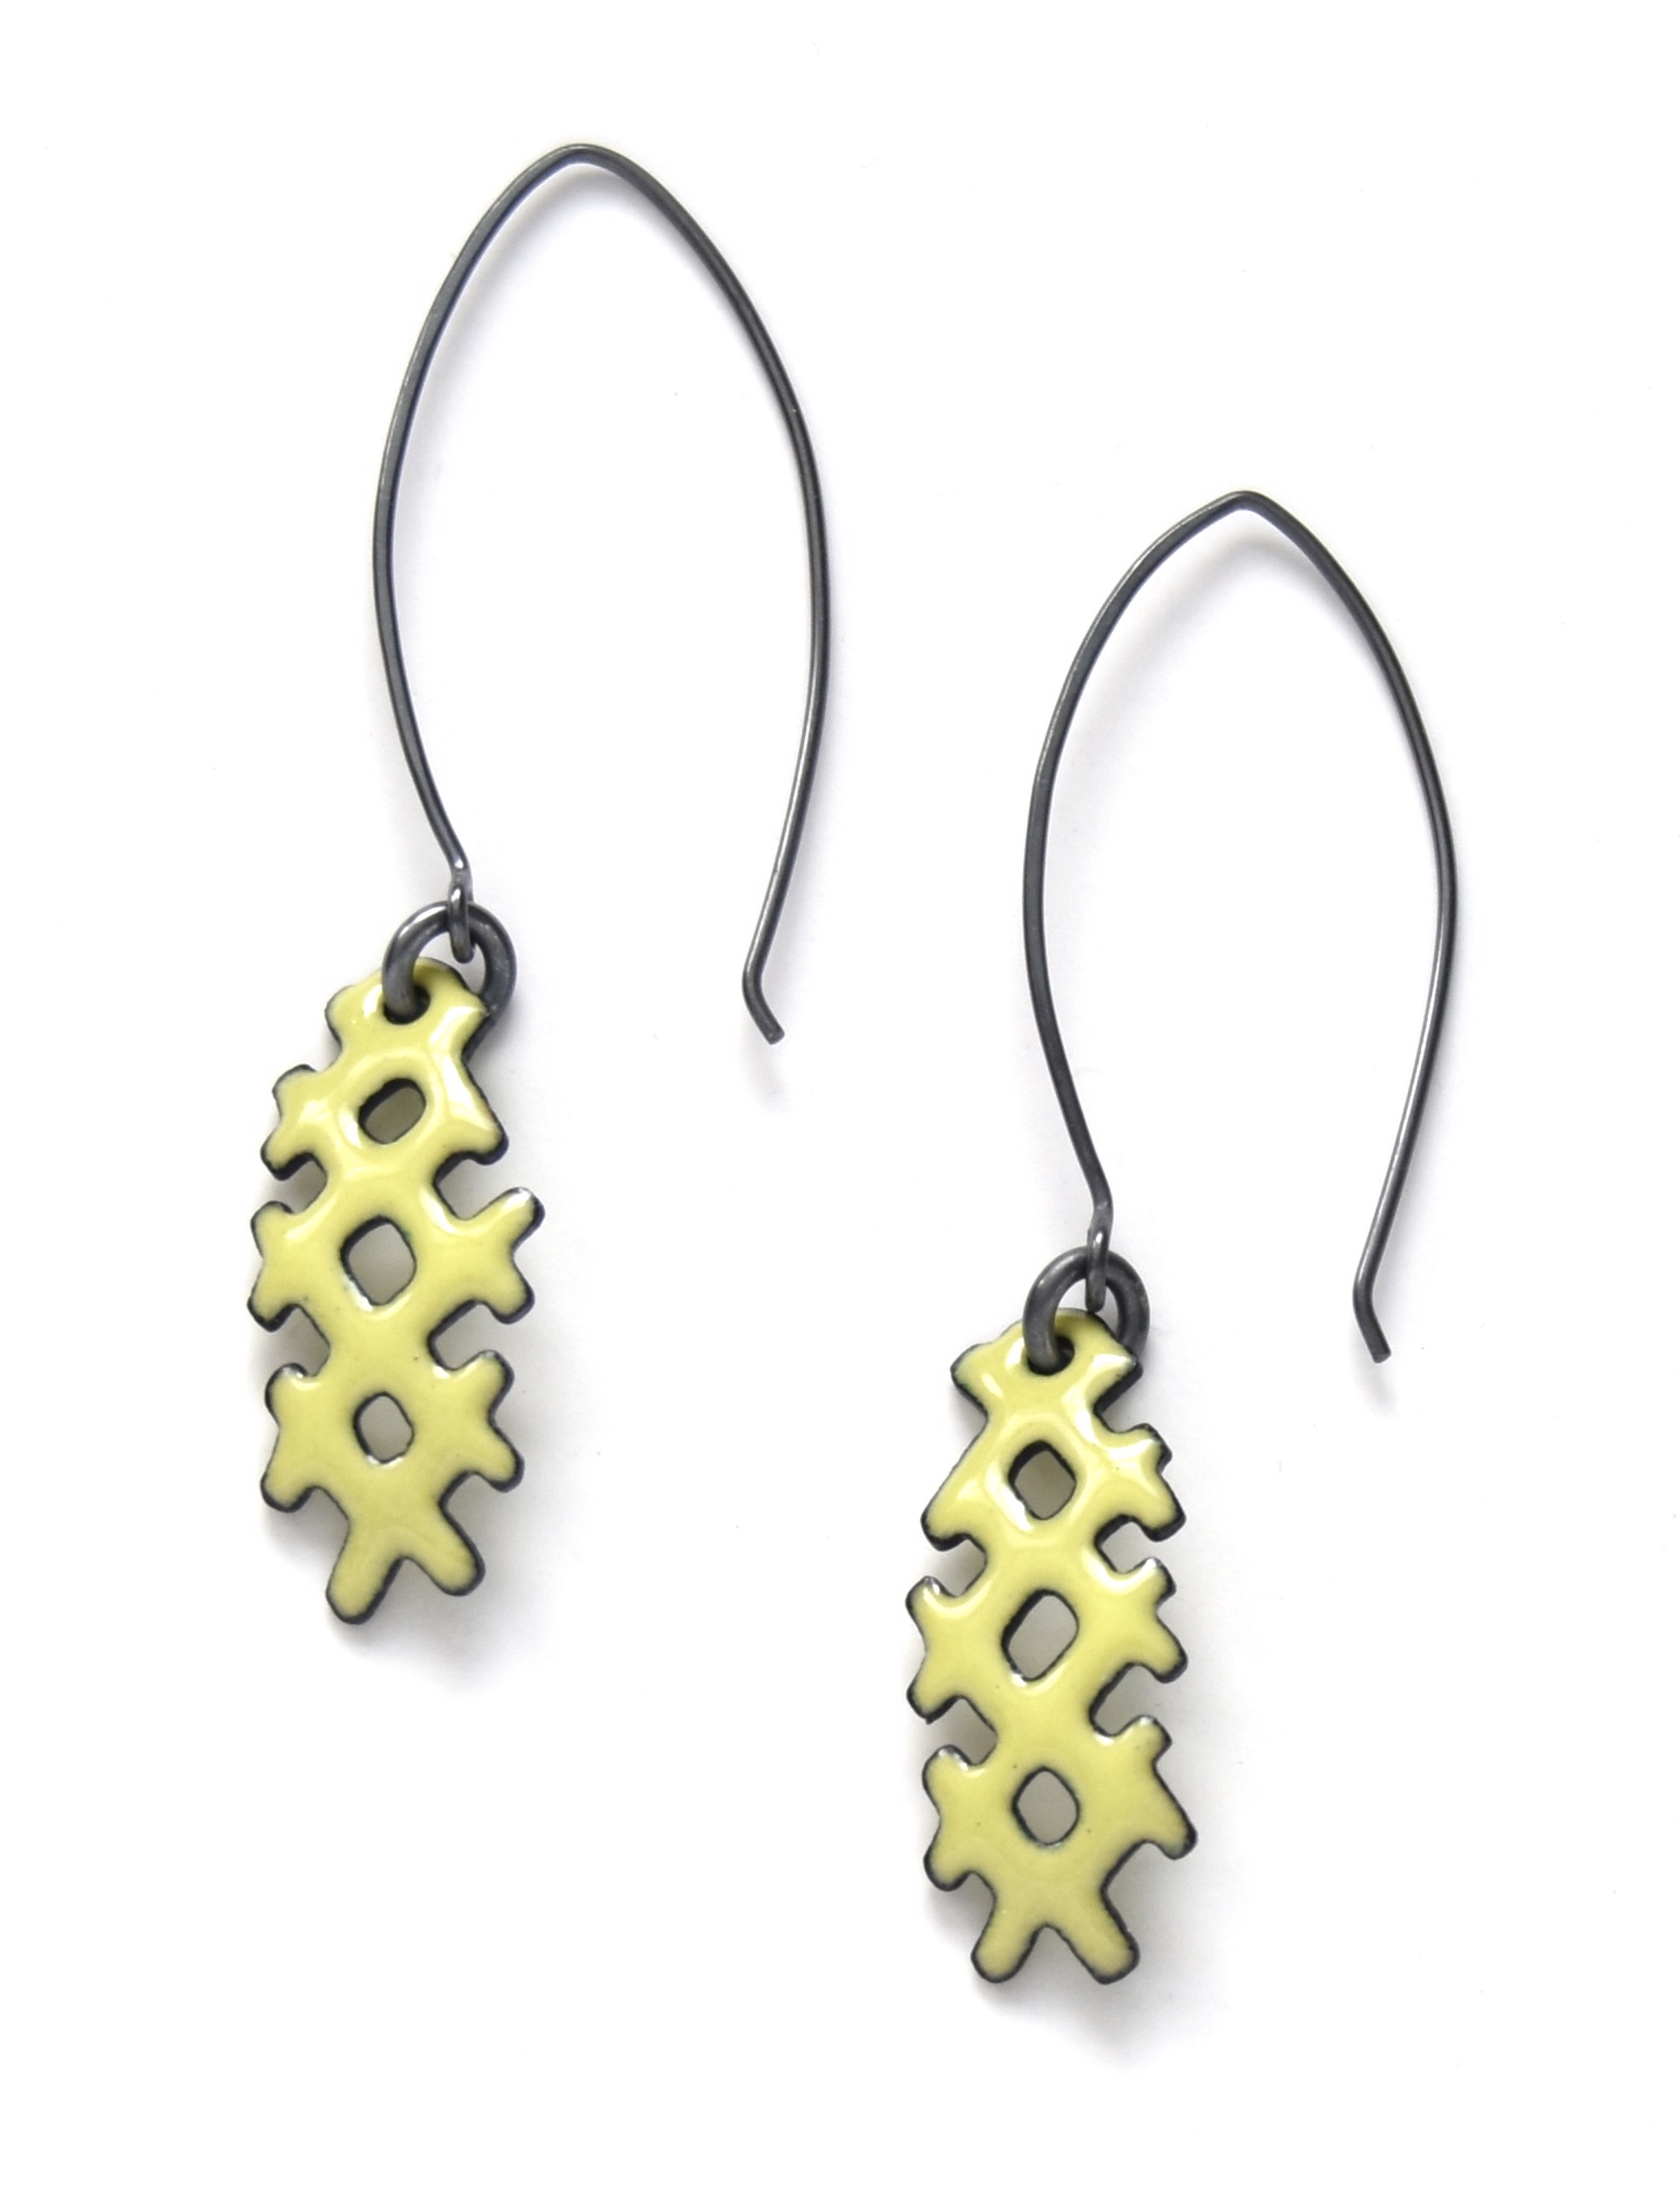 Small x Earrings by Joanna Nealey